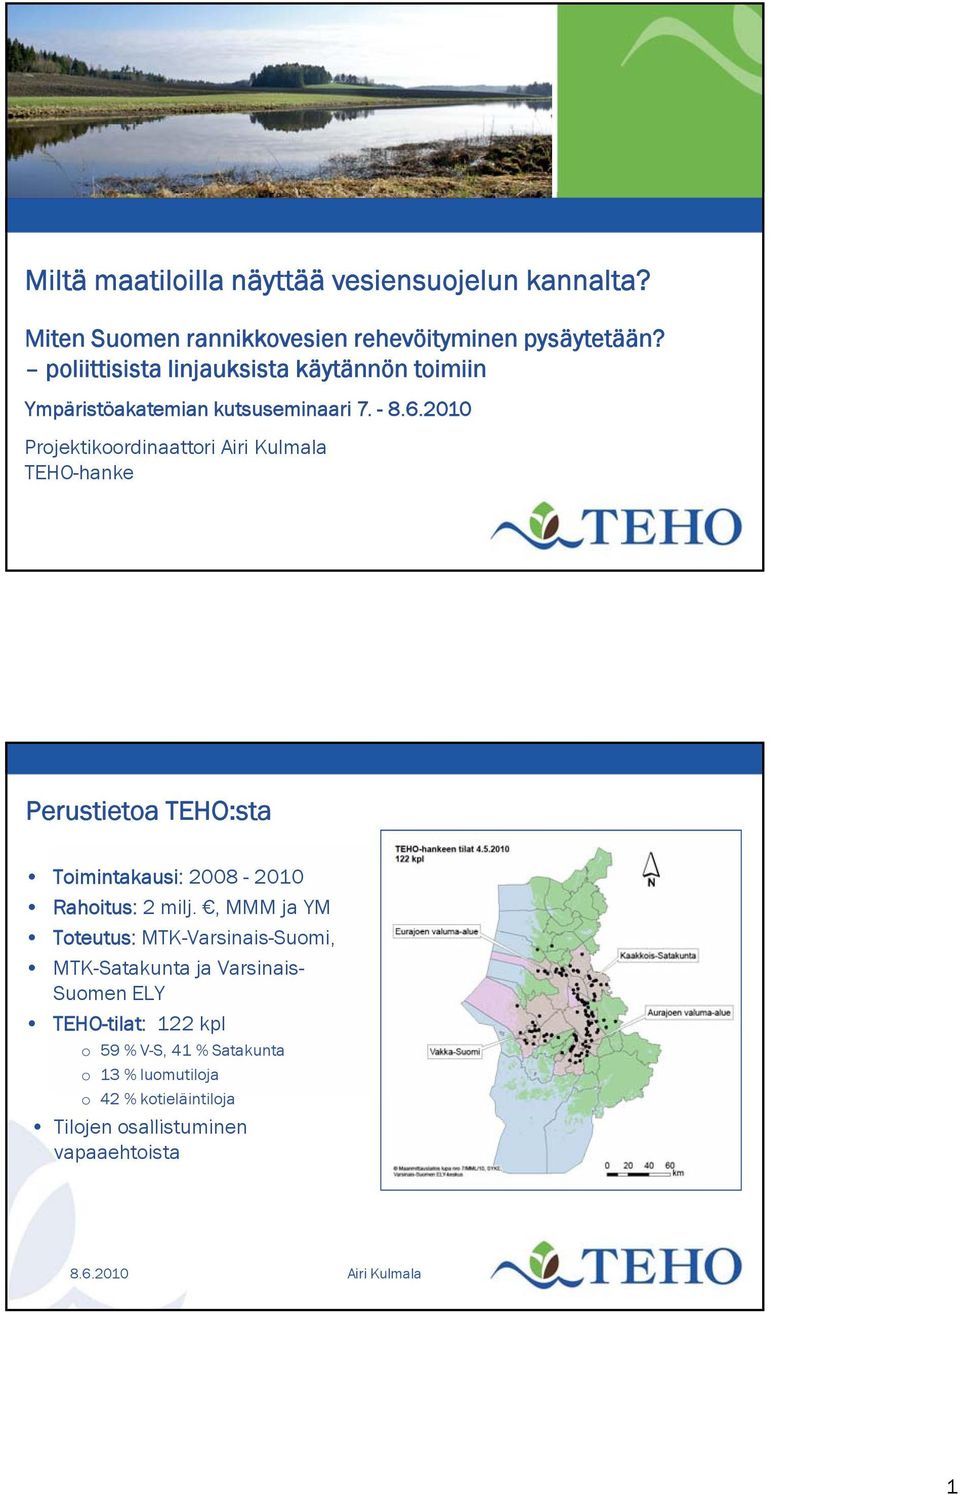 - Projektikoordinaattori TEHO-hanke Perustietoa TEHO:sta Toimintakausi: 2008-2010 Rahoitus: 2 milj.